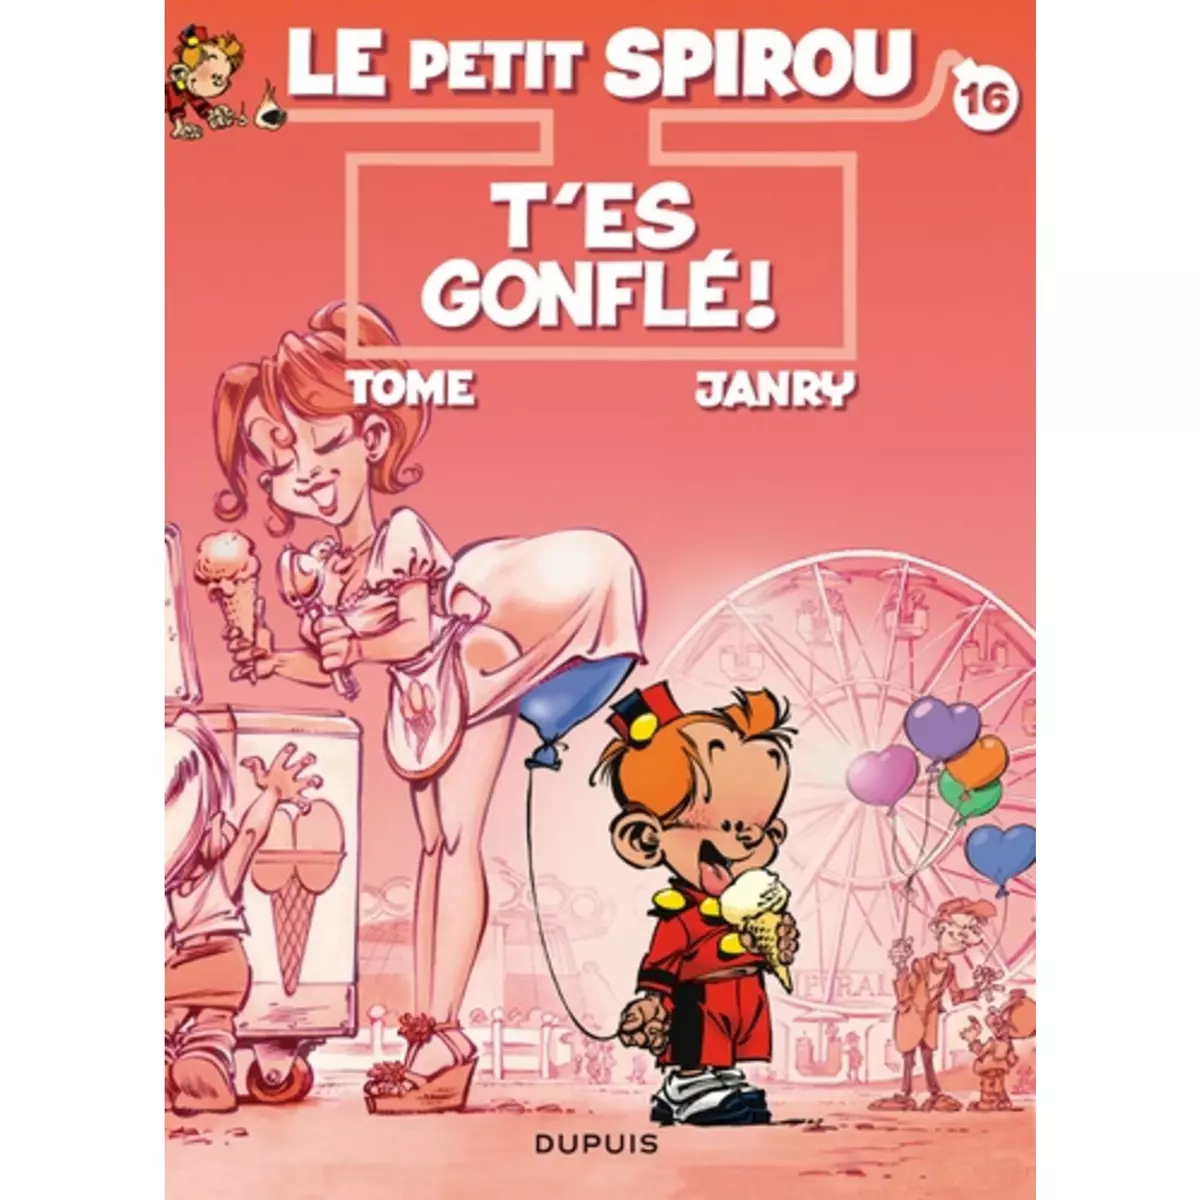  LE PETIT SPIROU TOME 16 : T'ES GONFLE !, Janry